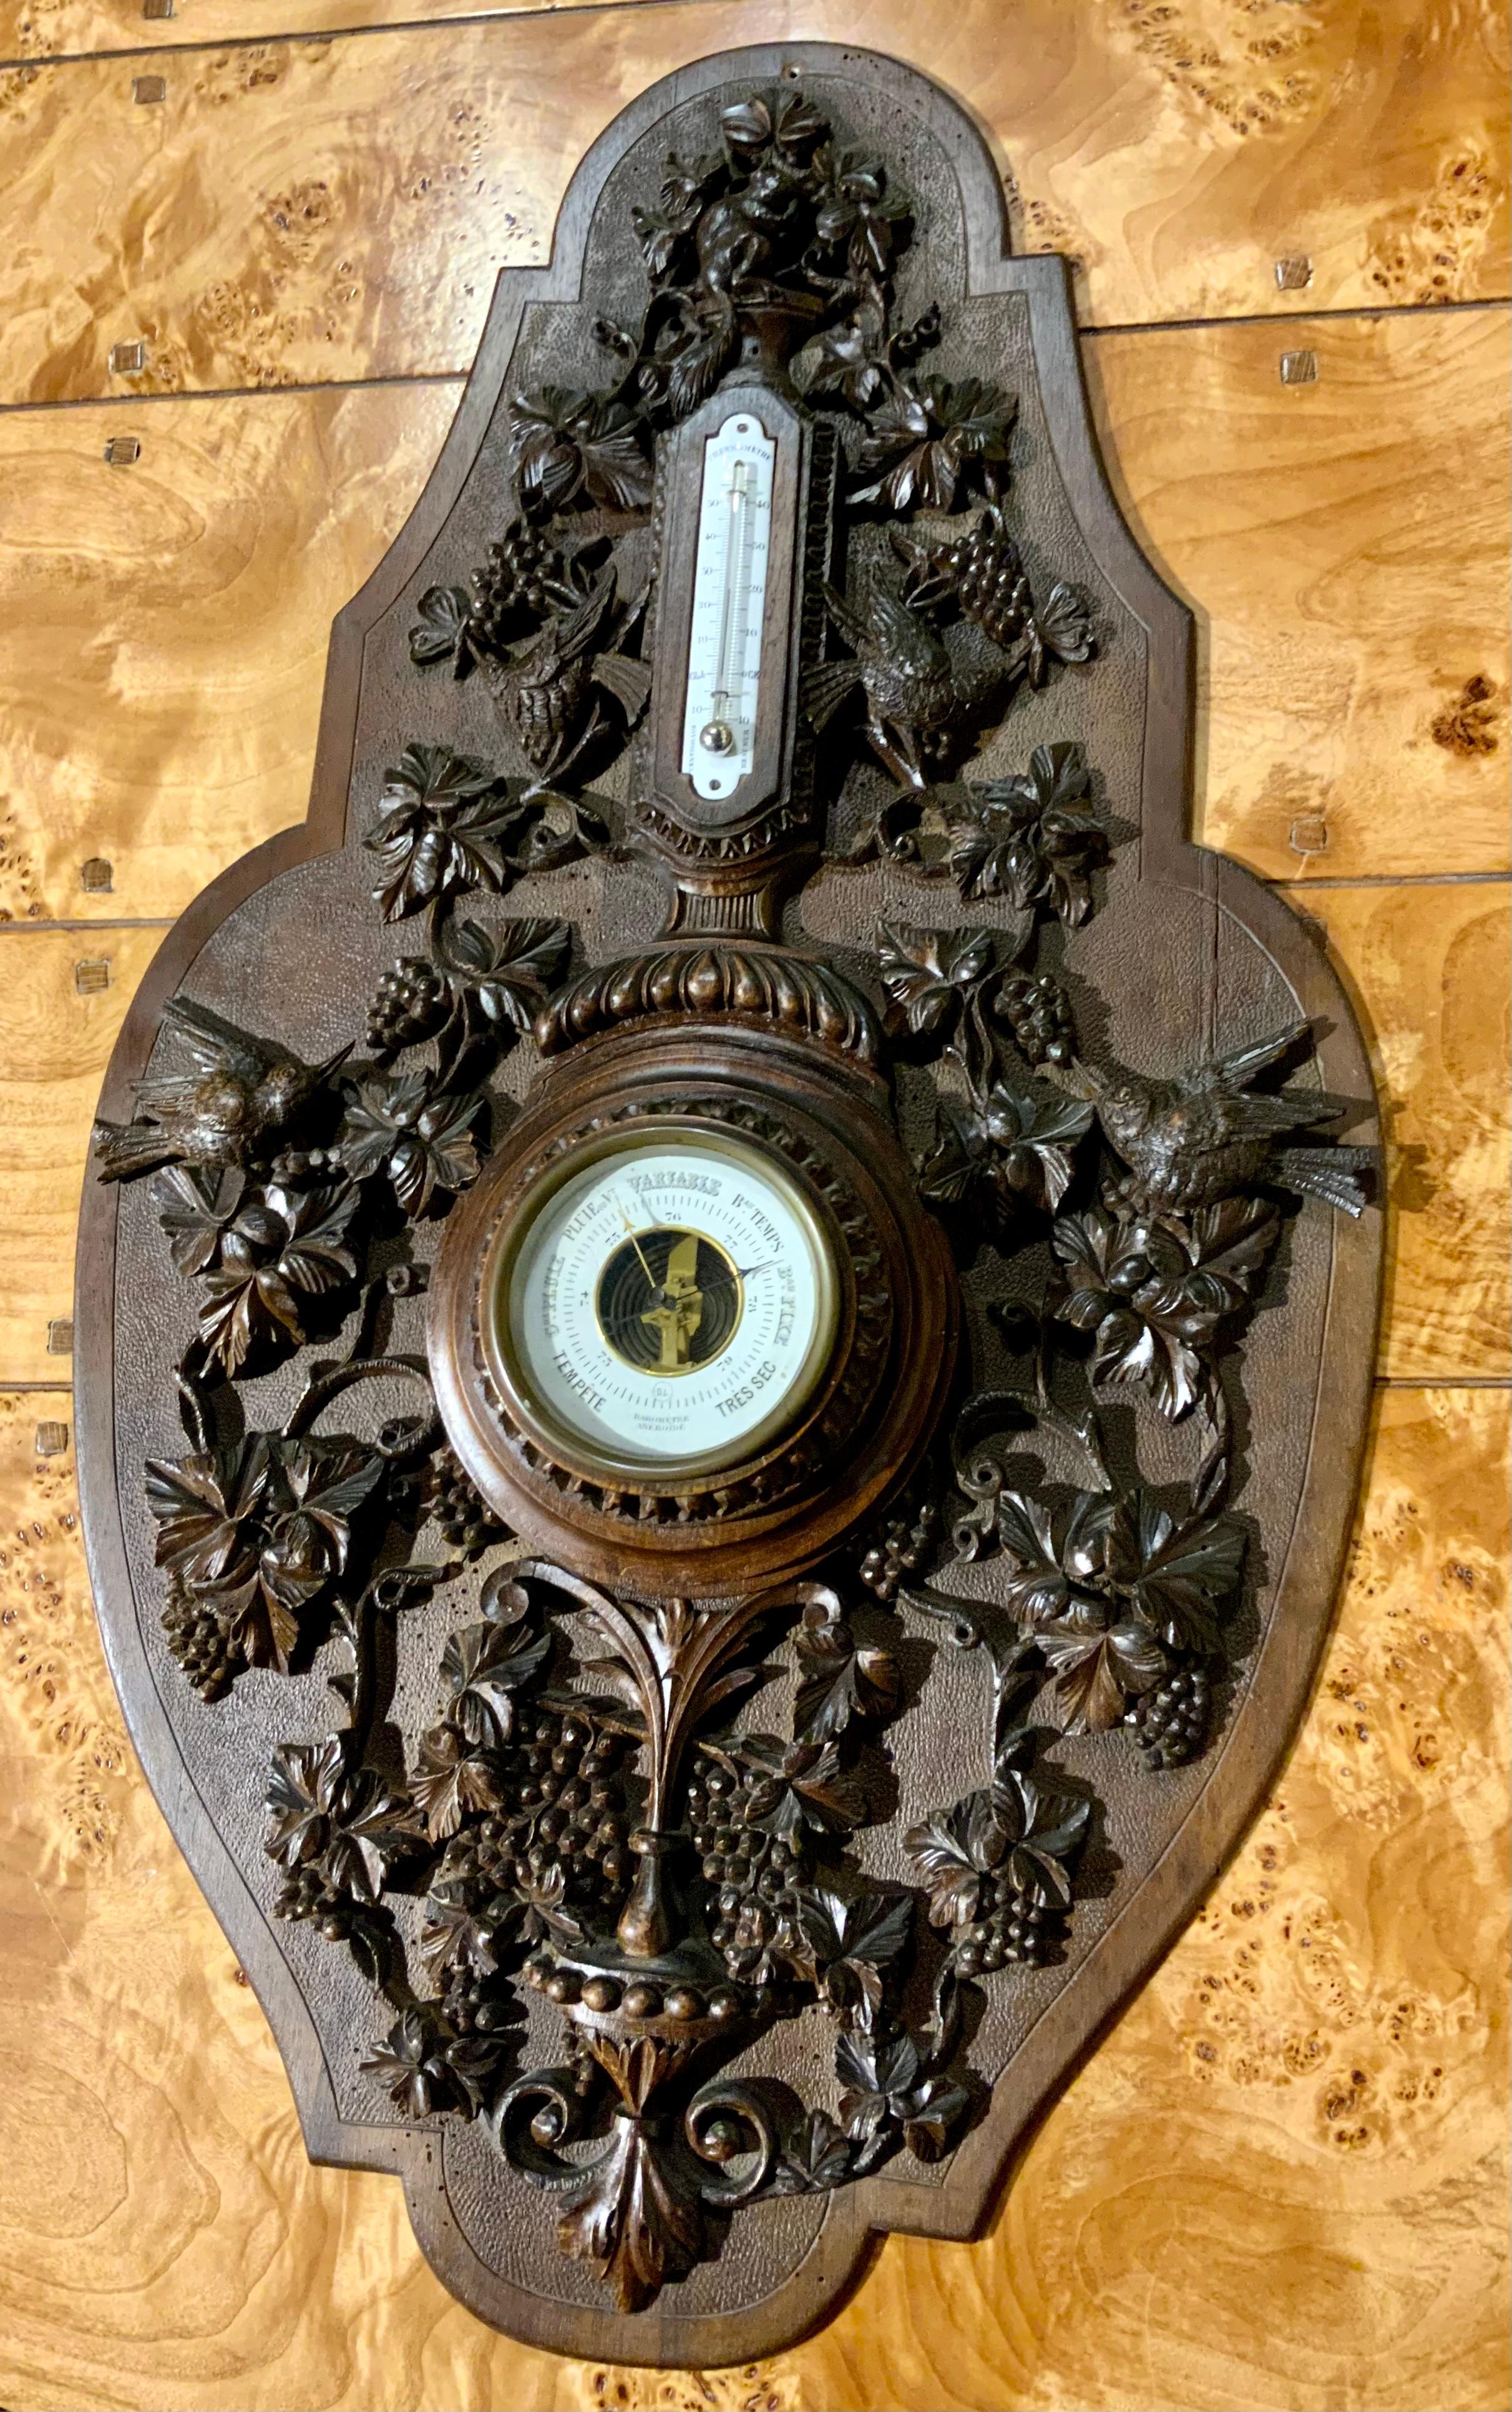 Dieses Barometer ist in sehr gutem Zustand ohne strukturelle Probleme
Er ist mit Kolibris und Trauben als dekoratives Motiv verziert.
Das Barometer ist original und funktioniert einwandfrei. Die Form ist einzigartig
In länglicher ovaler Form.